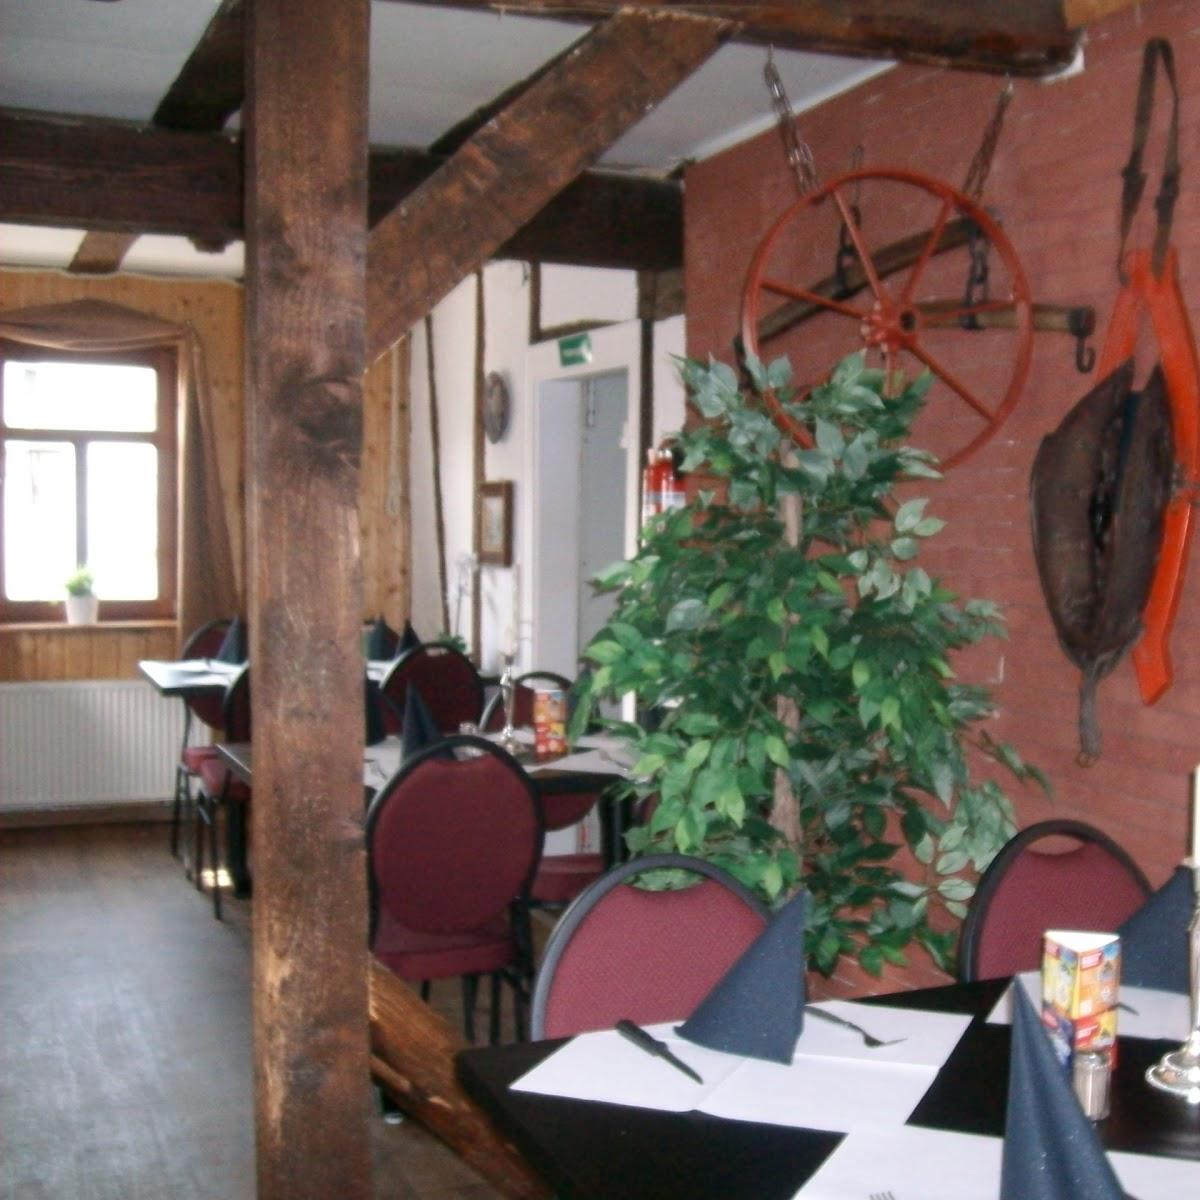 Restaurant "Restaurant Klönschnack" in Rehe